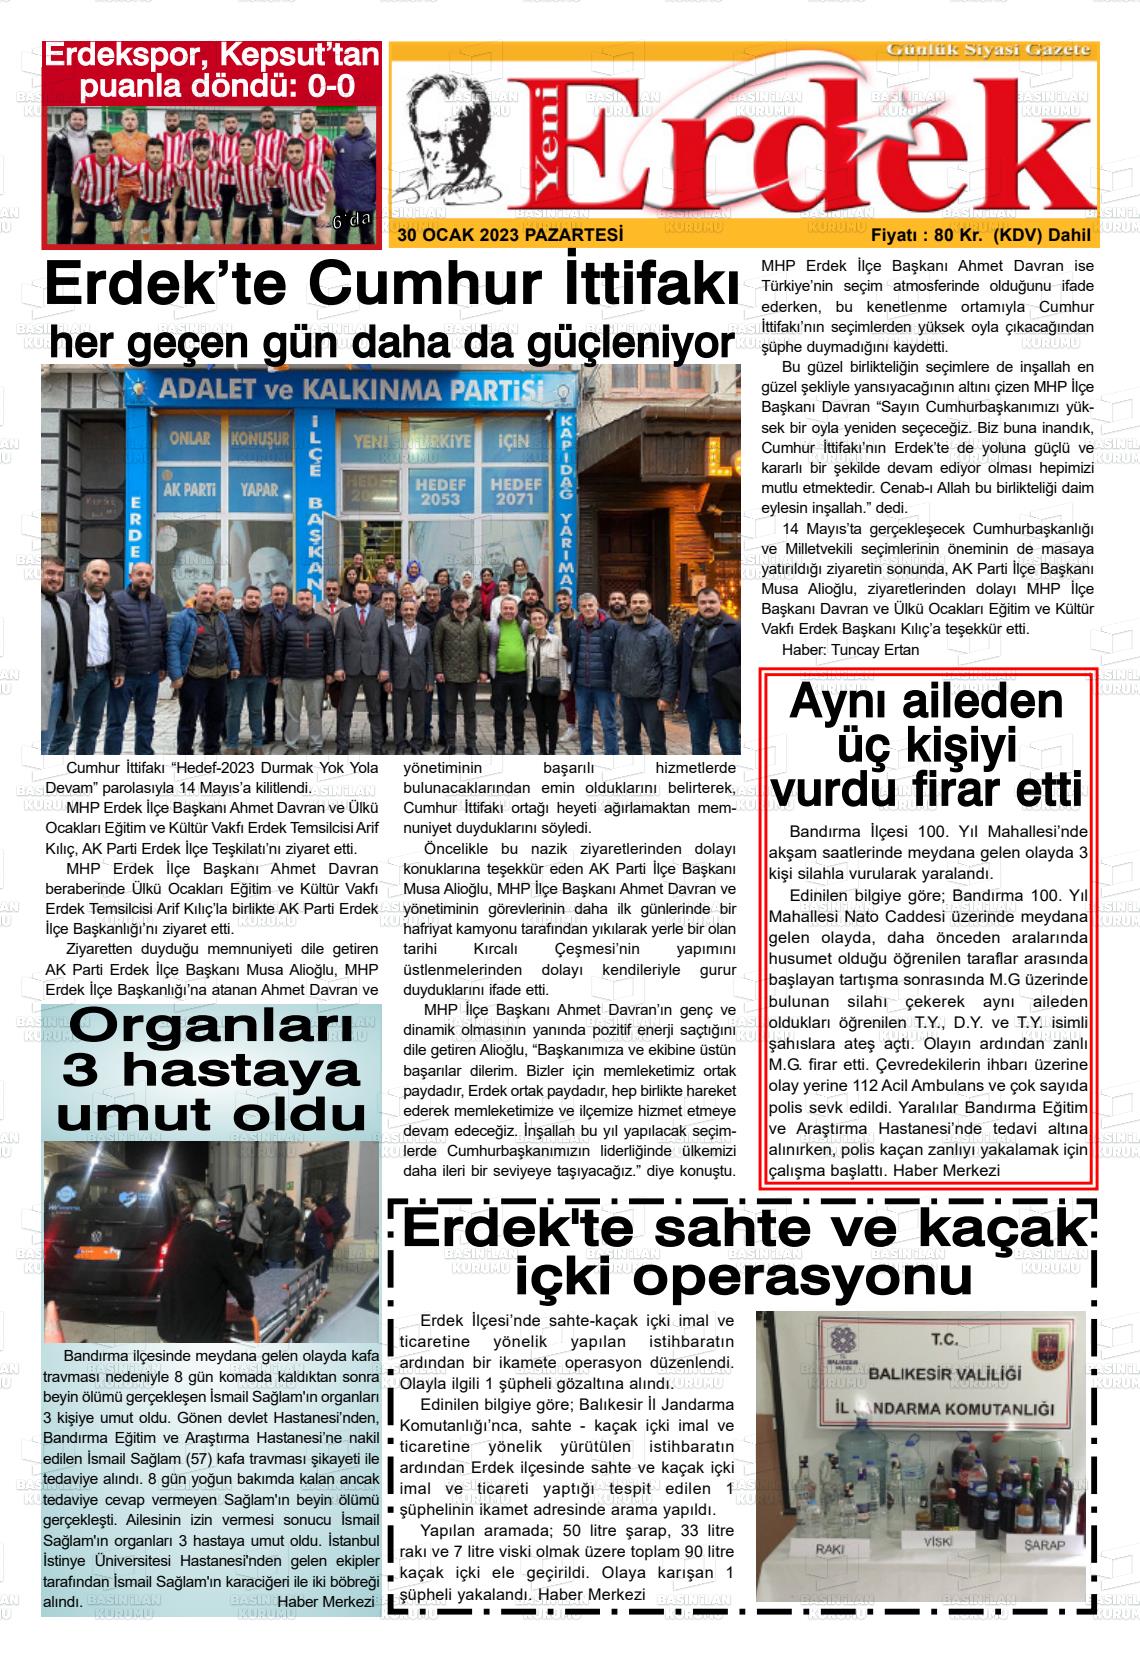 30 Ocak 2023 Yeni Erdek Gazete Manşeti